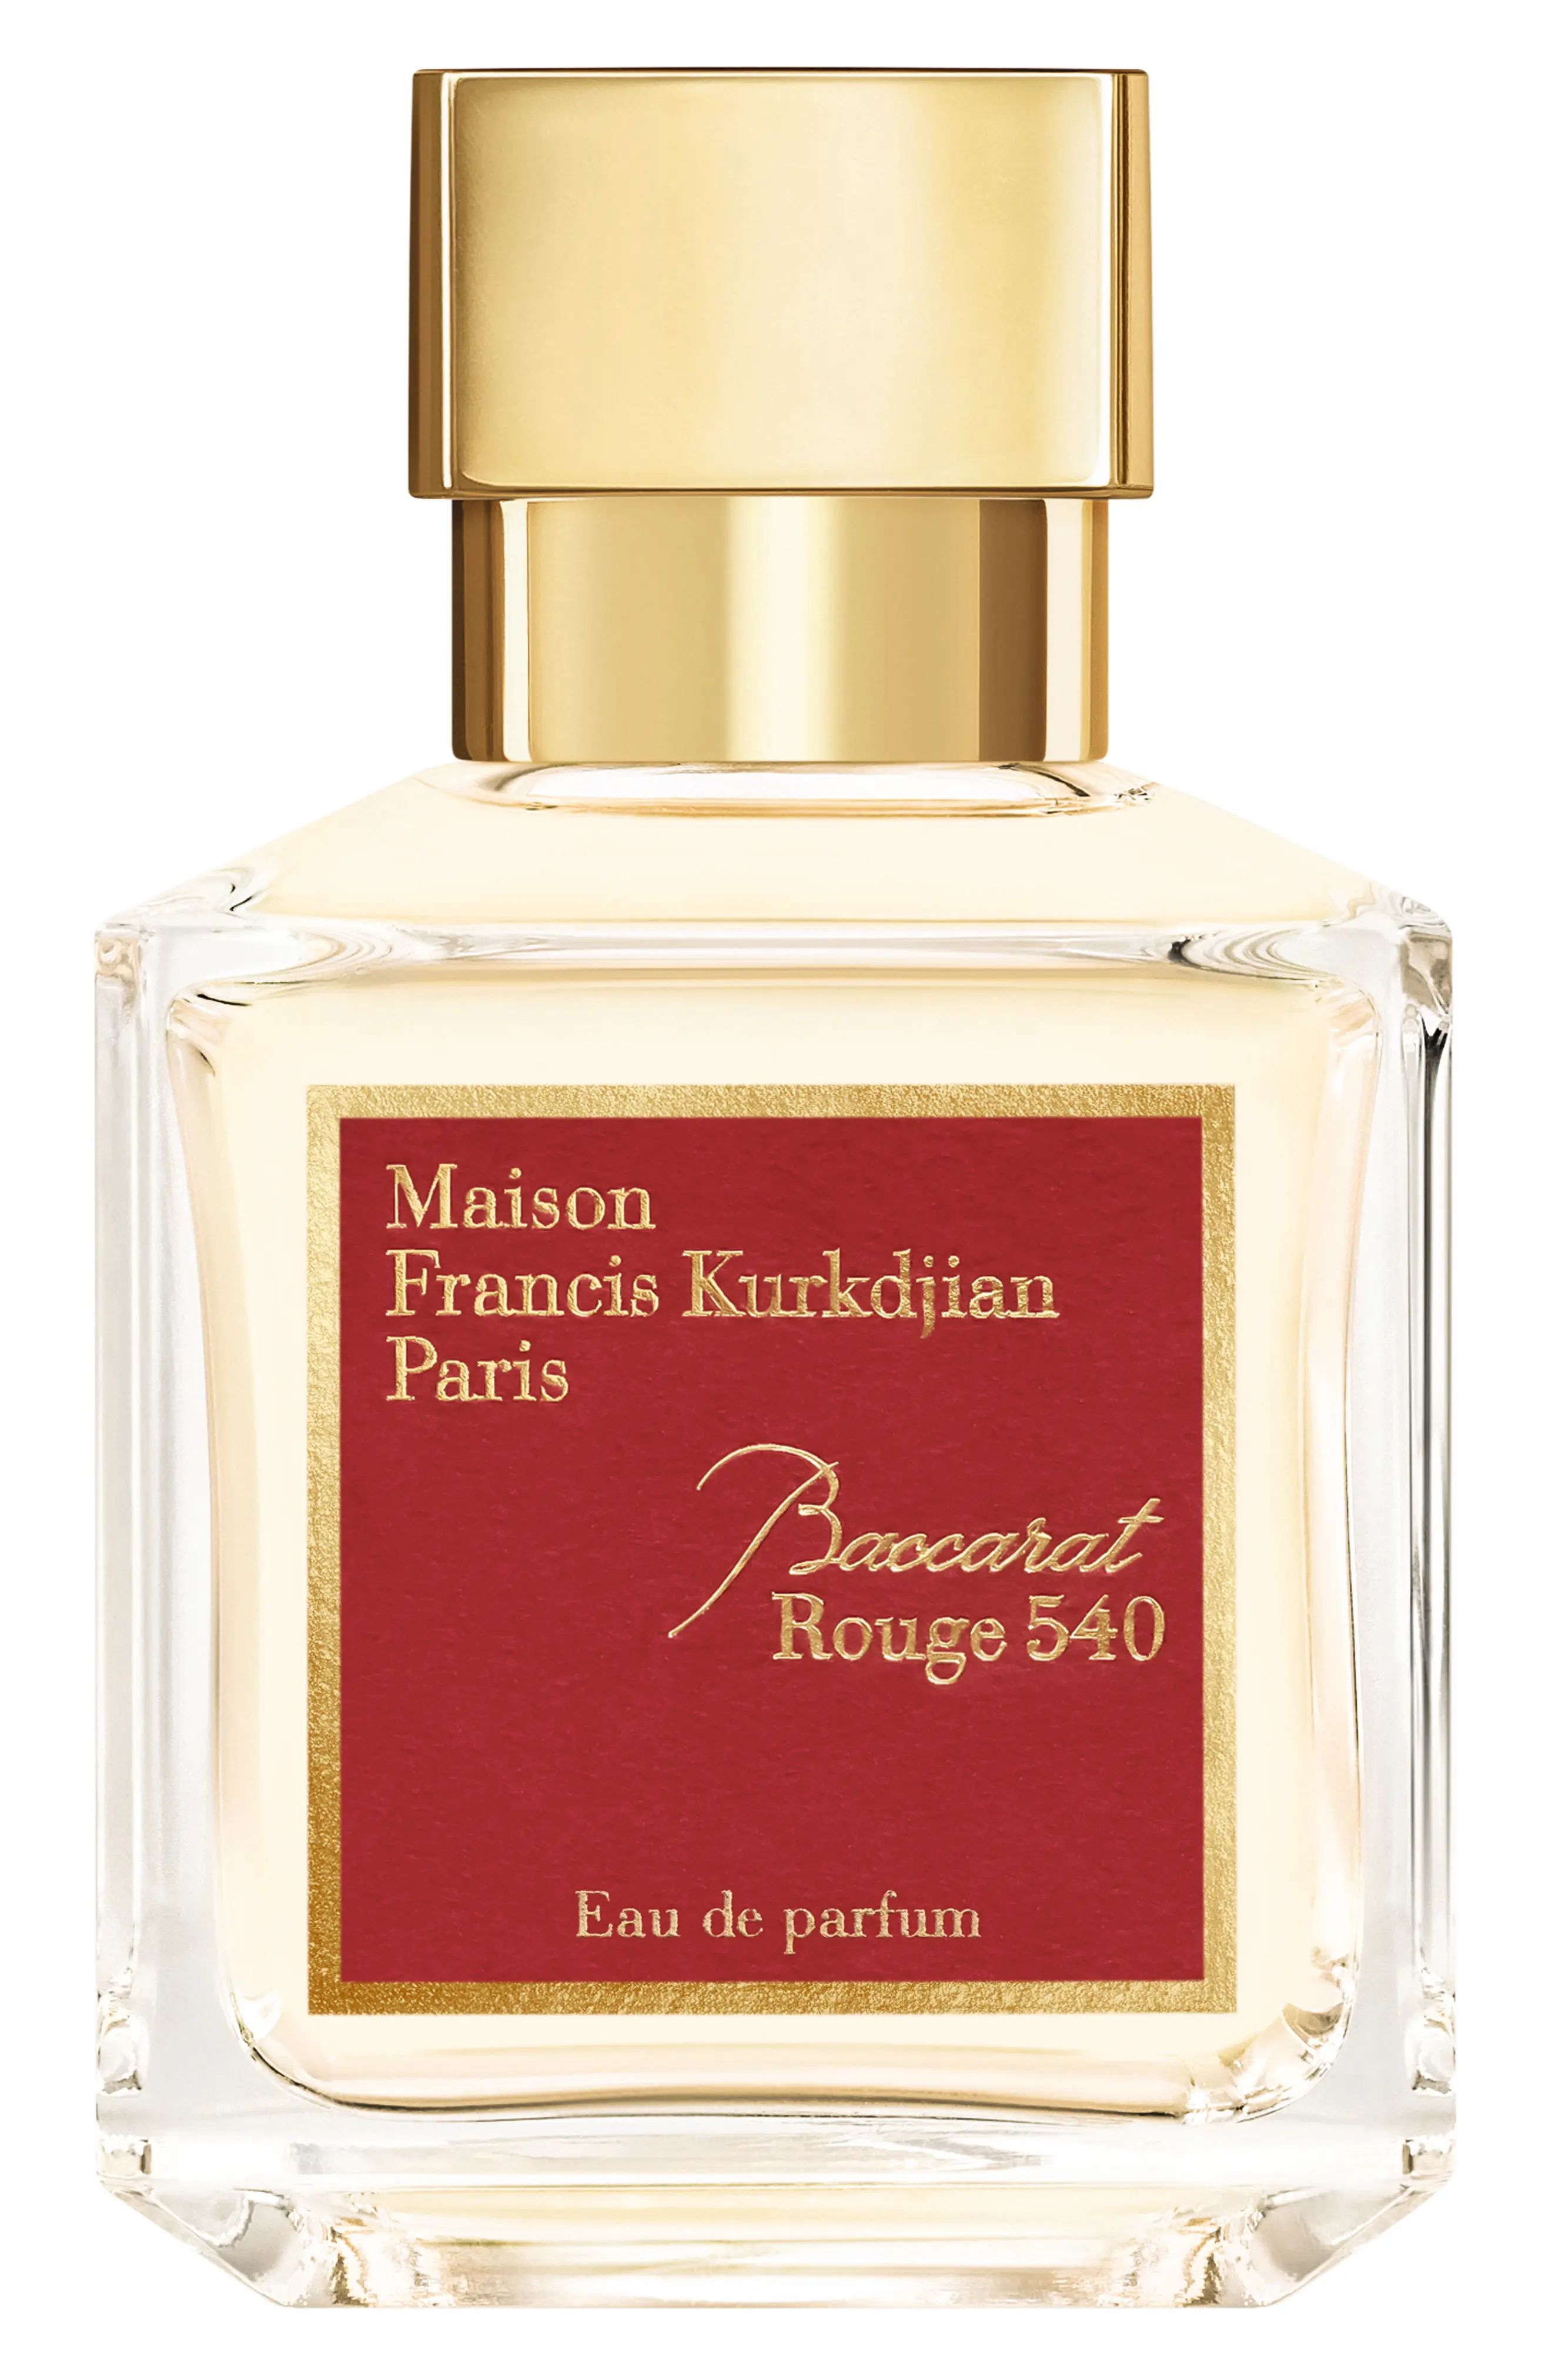 Maison Francis Kurkdjian Paris Baccarat Rouge 540 Eau de Parfum at Nordstrom, Size 2.4 Oz | Nordstrom